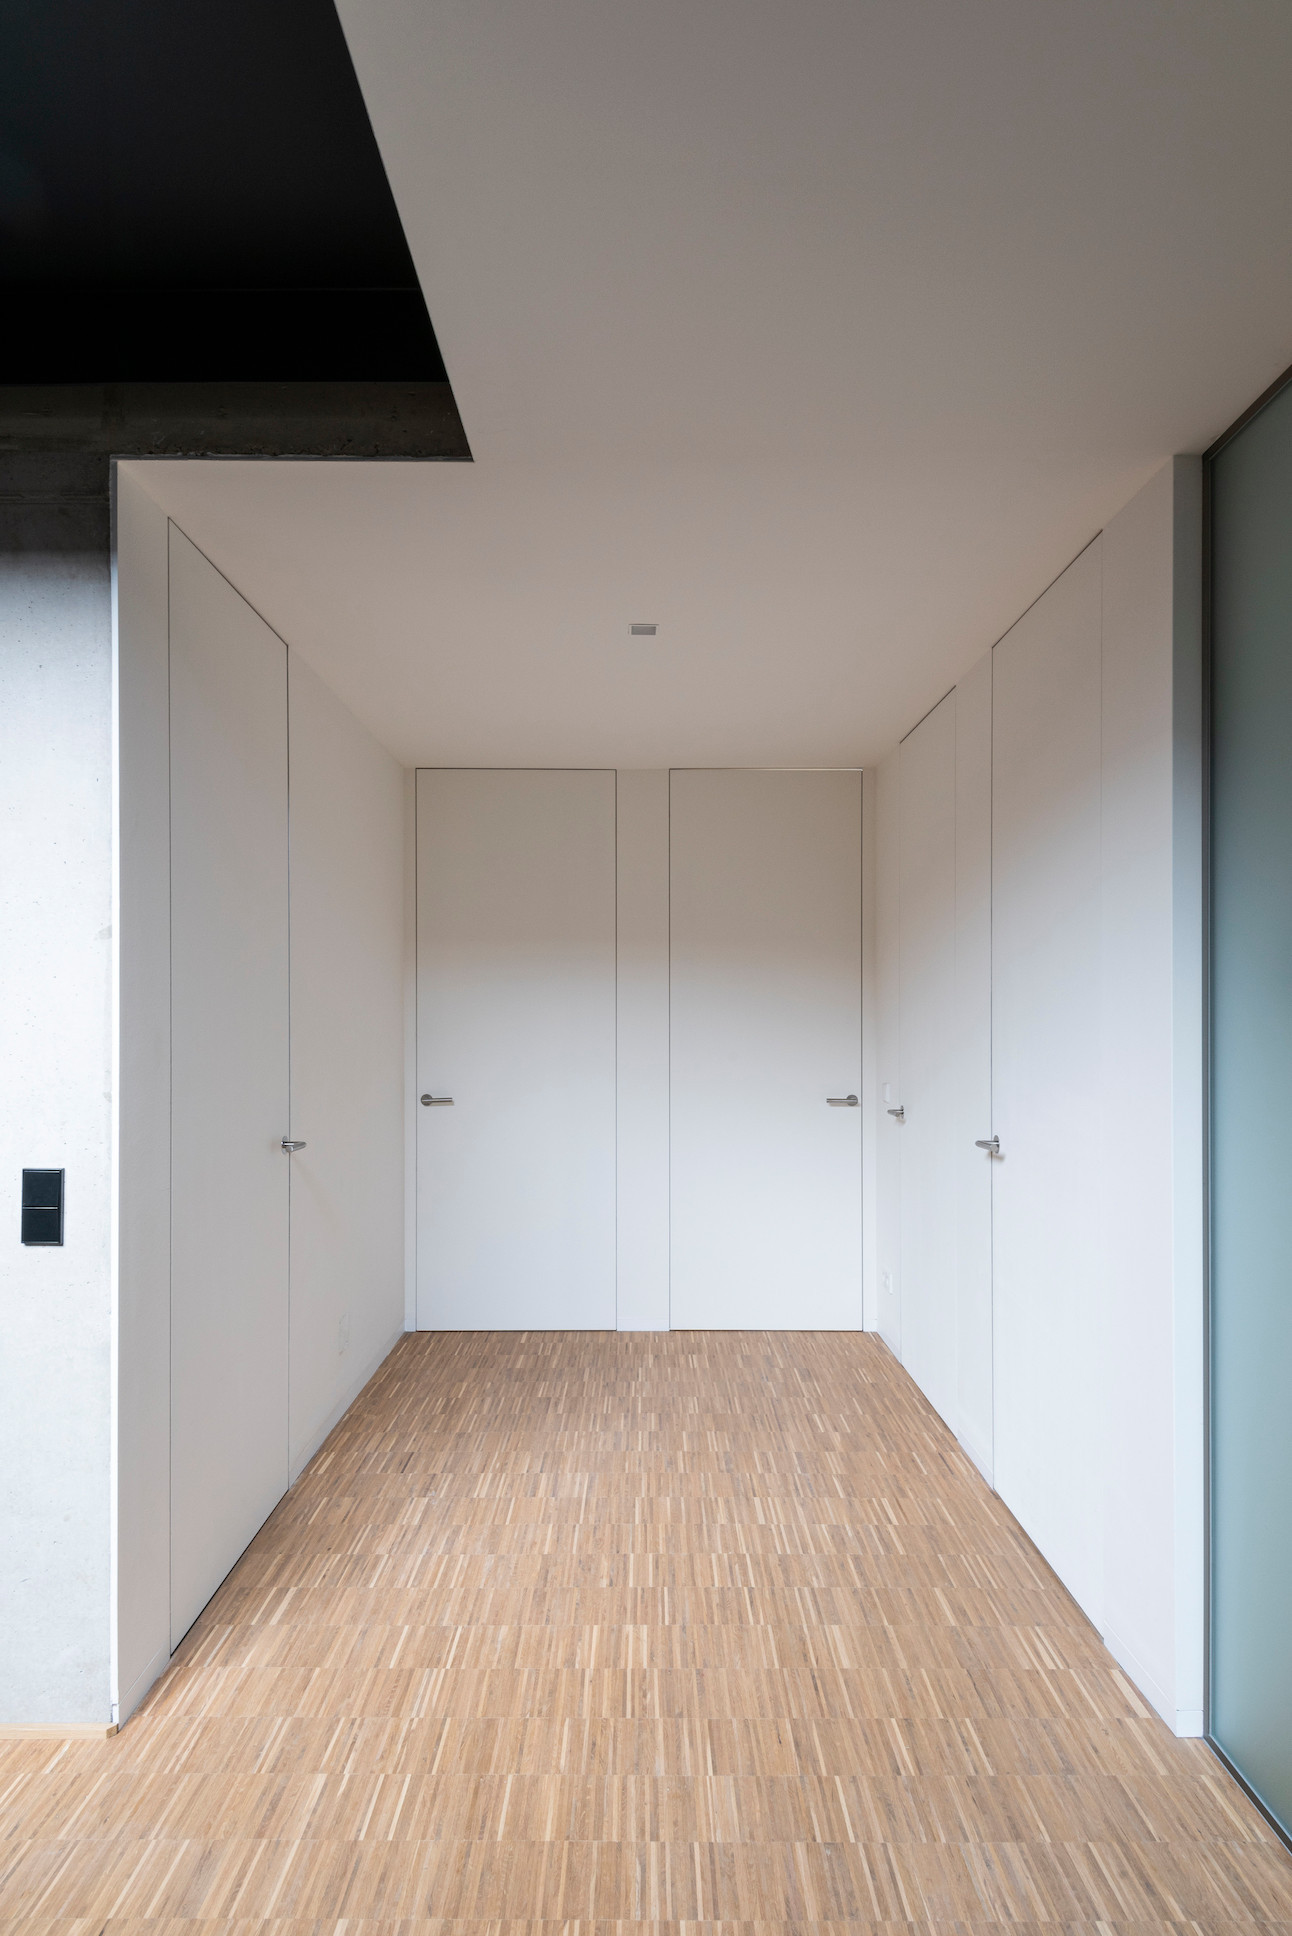 Les portes toute hauteur apportent un caractère minimaliste à cet espace. (Photo : Ludmilla Cerveny)